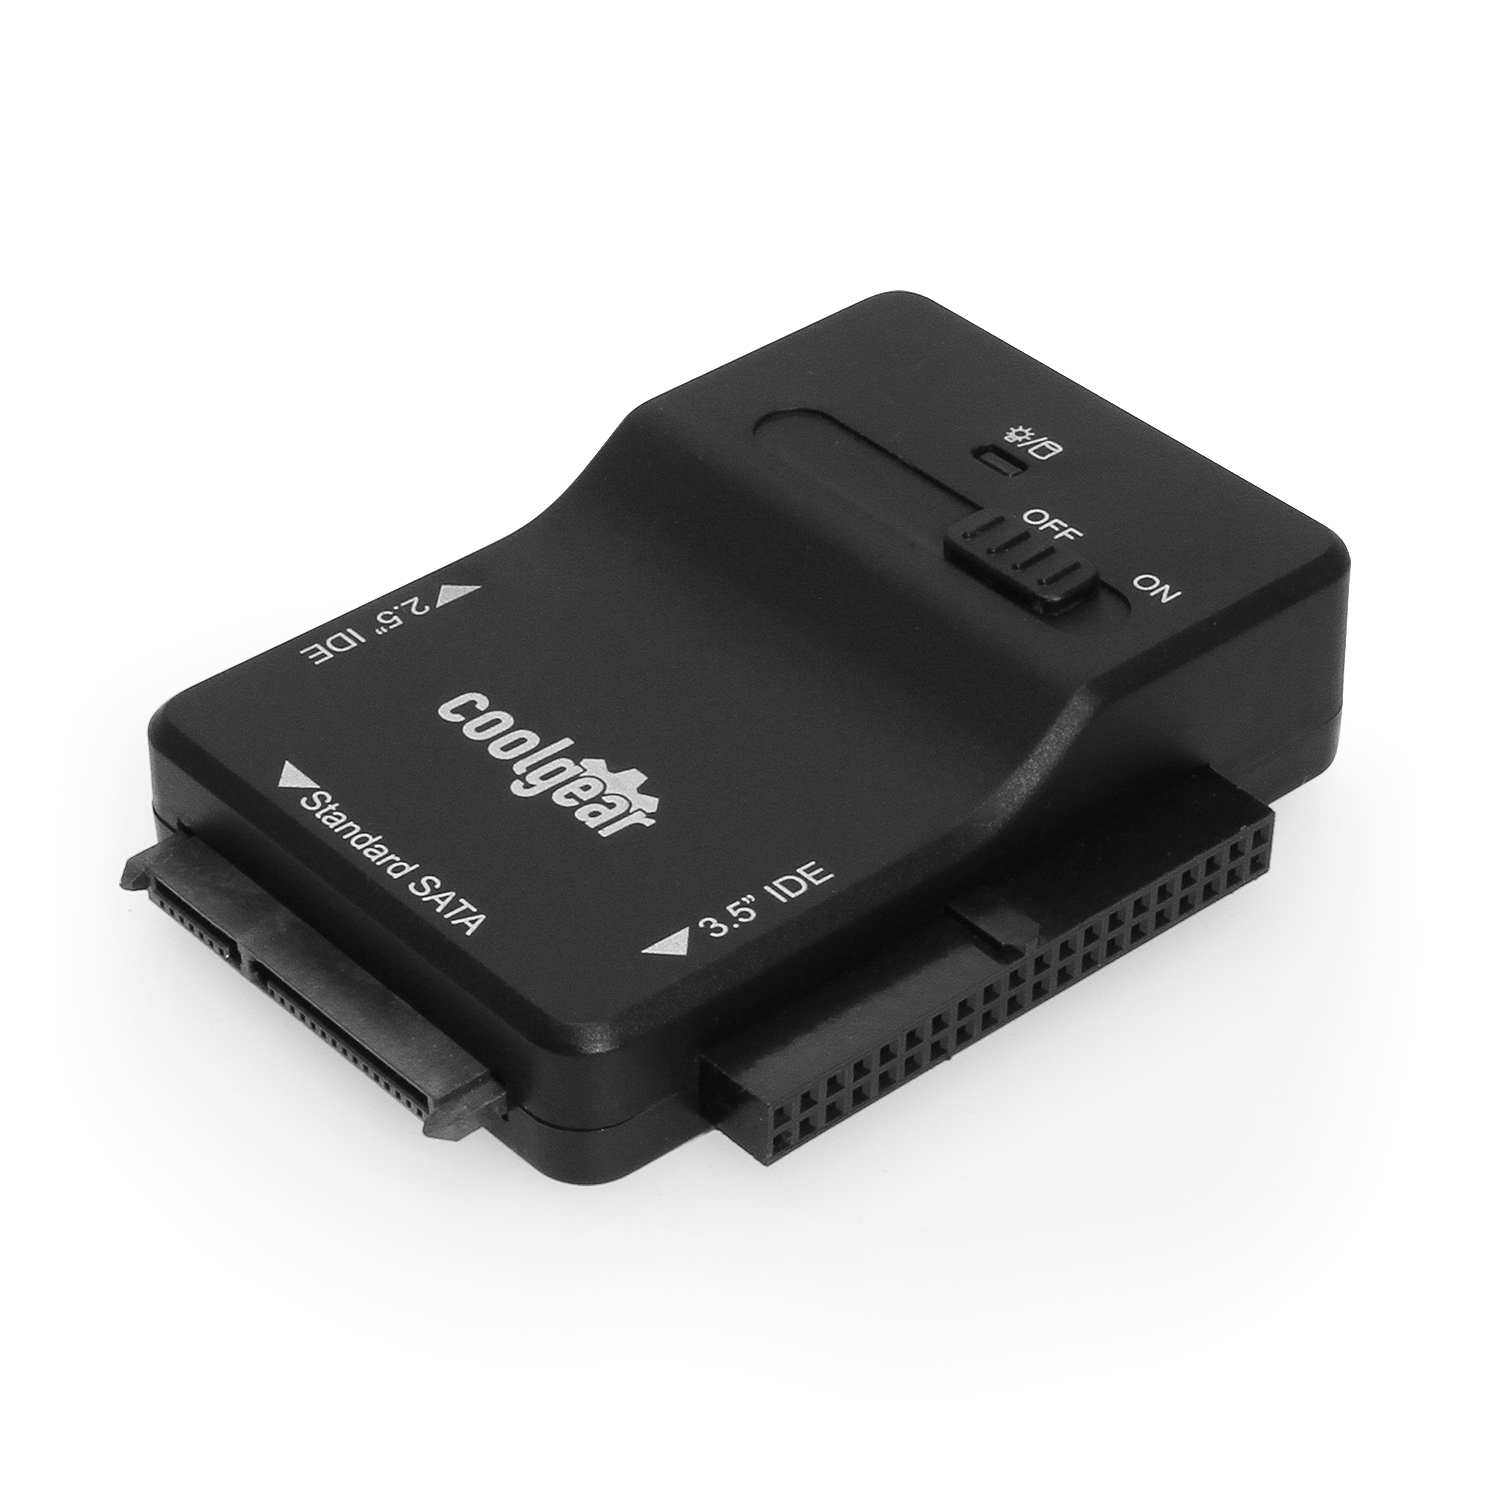 at styre Udøve sport Forståelse USB 3.0 to SATA or PATA Hard Drive Adapter - Coolgear